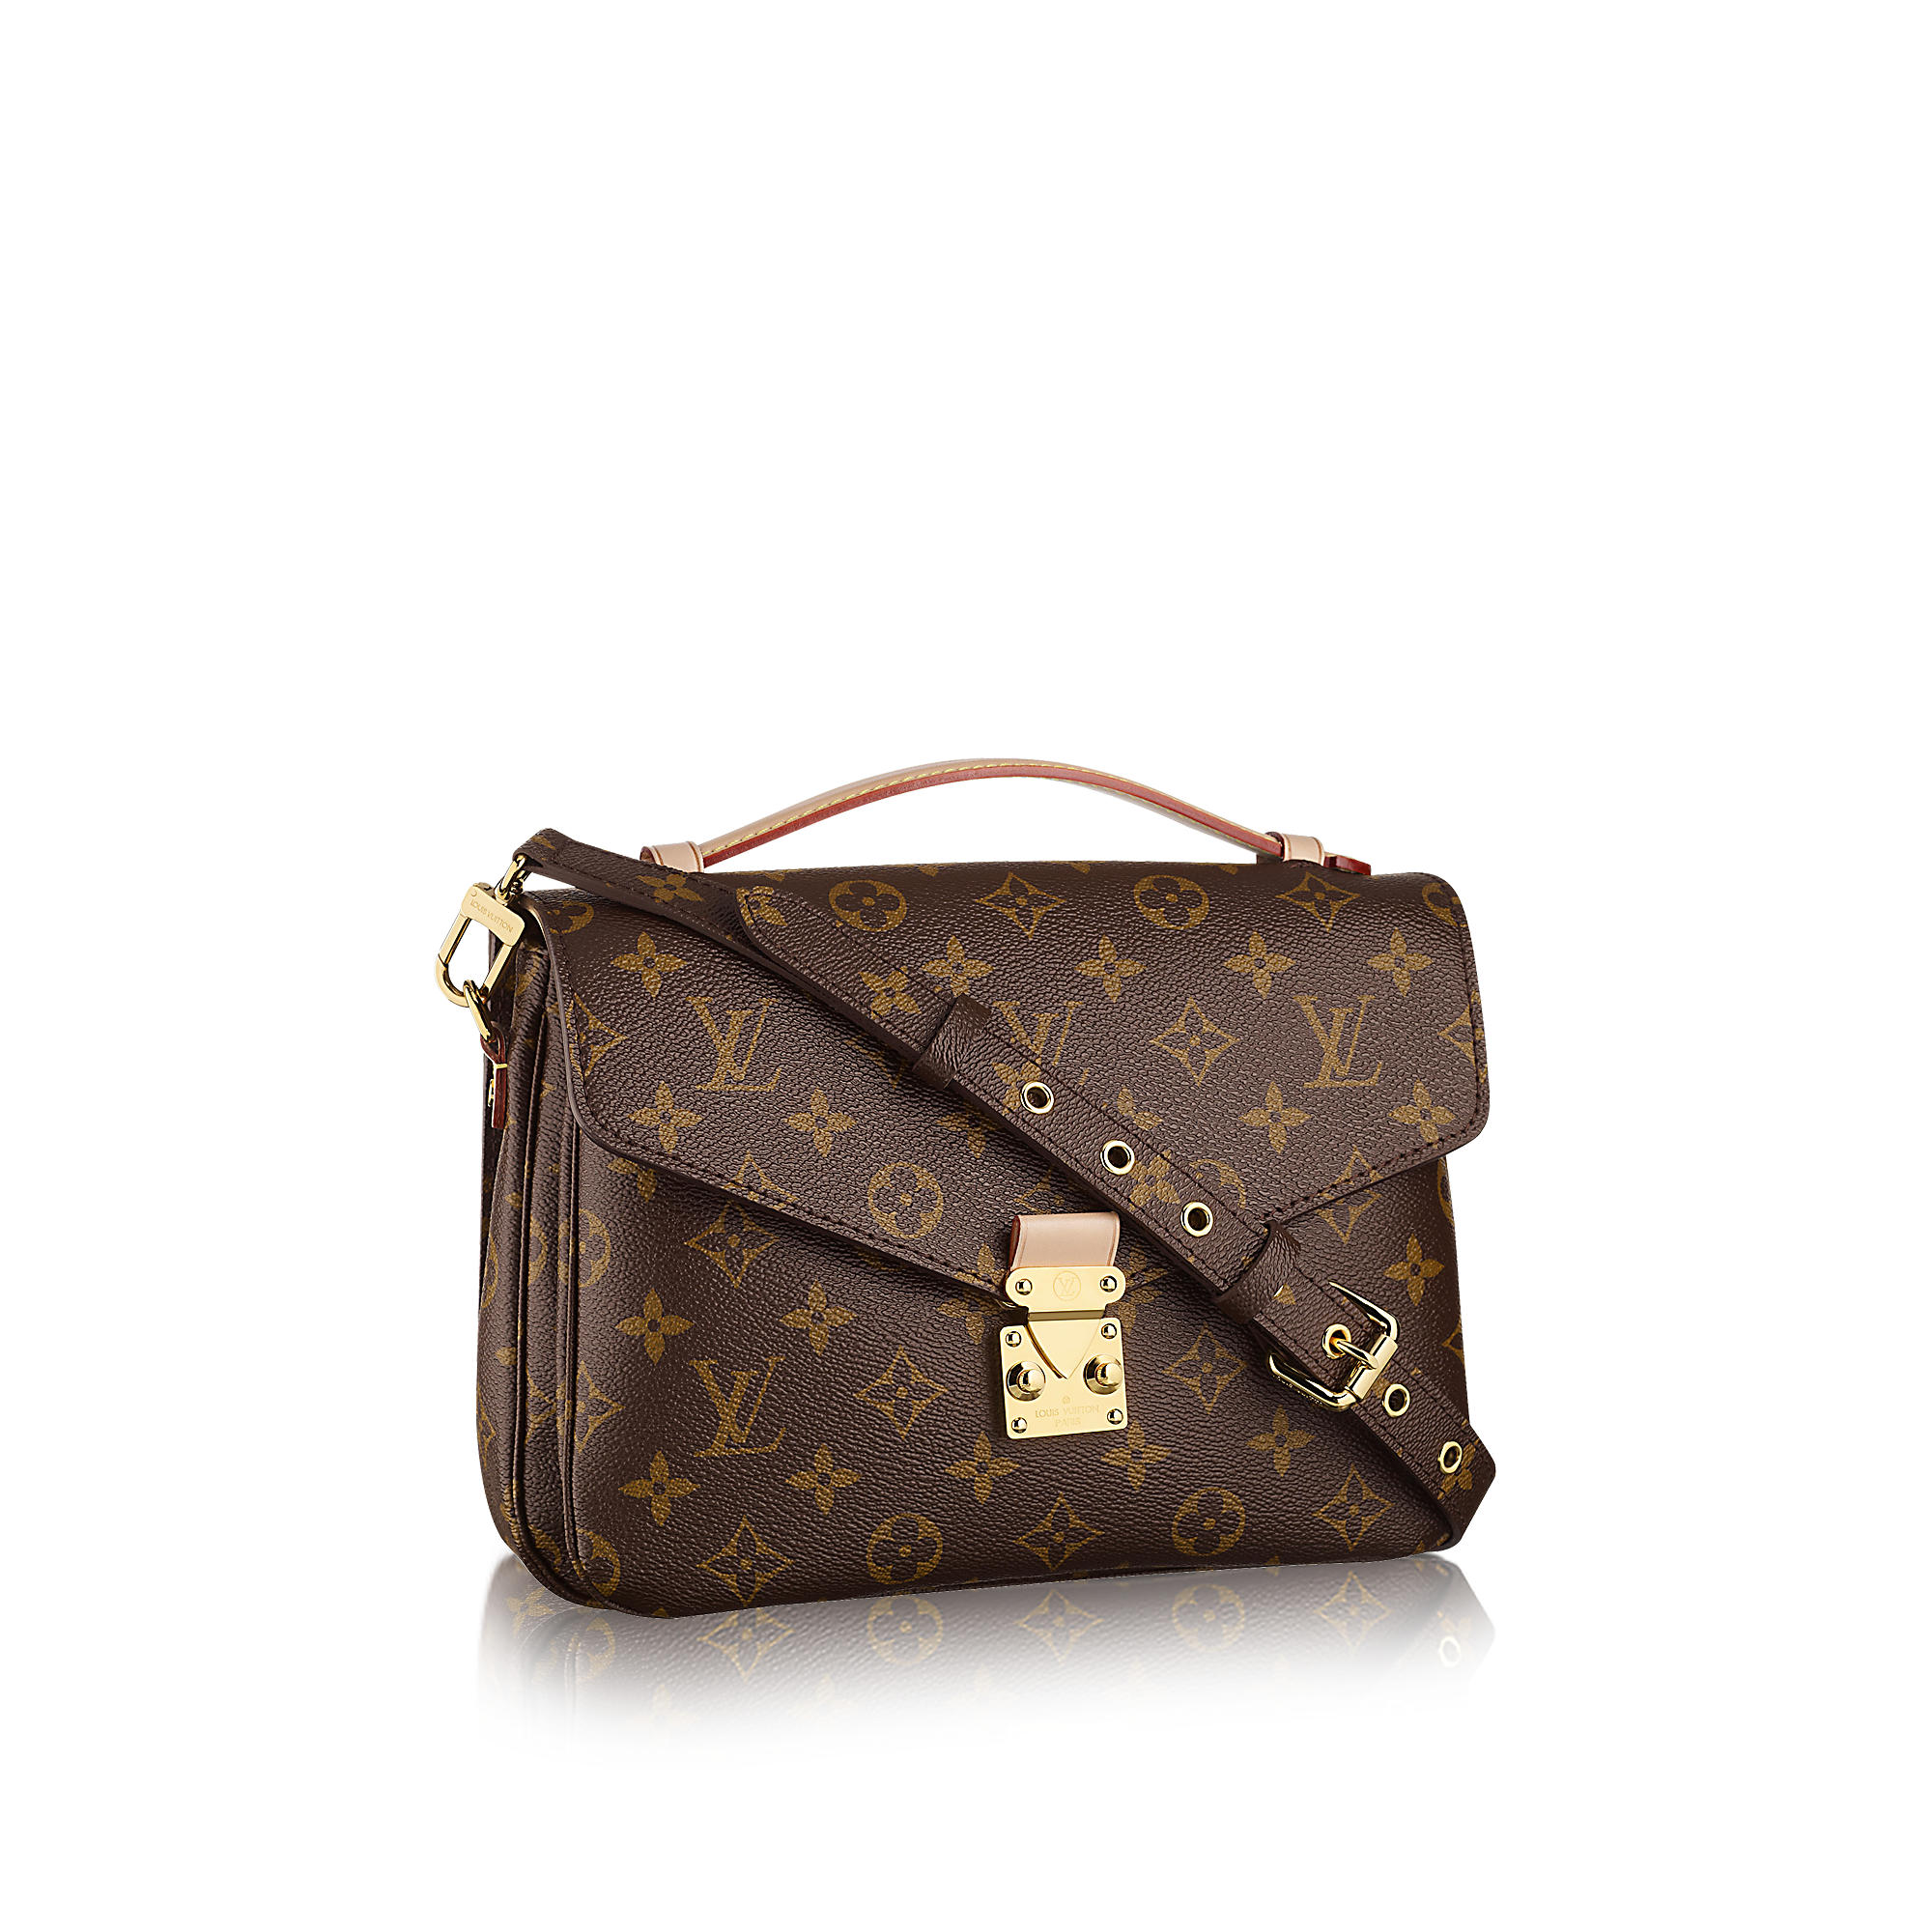 Louis Vuitton Replica bags 